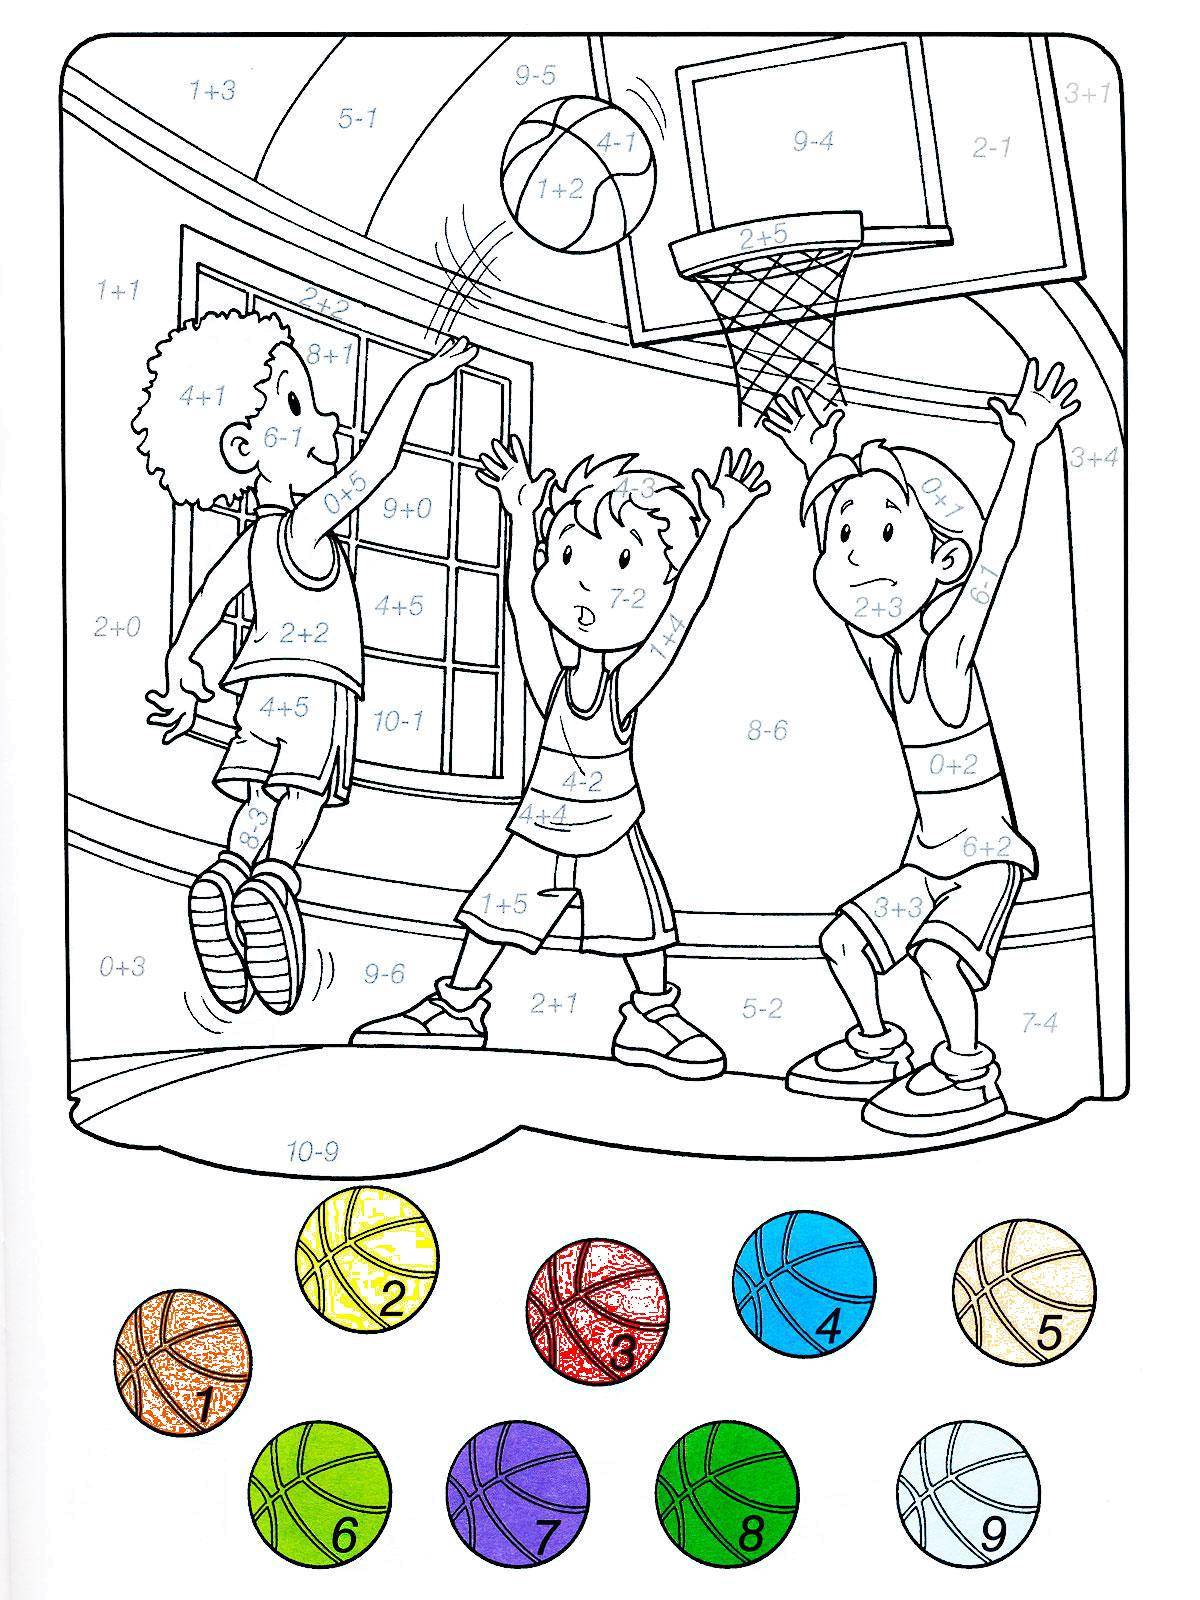 Название: Раскраска Раскрась баскетболистов решив примеры. Категория: математические раскраски. Теги: спорт, баскетбол, дети, игра, примеры.